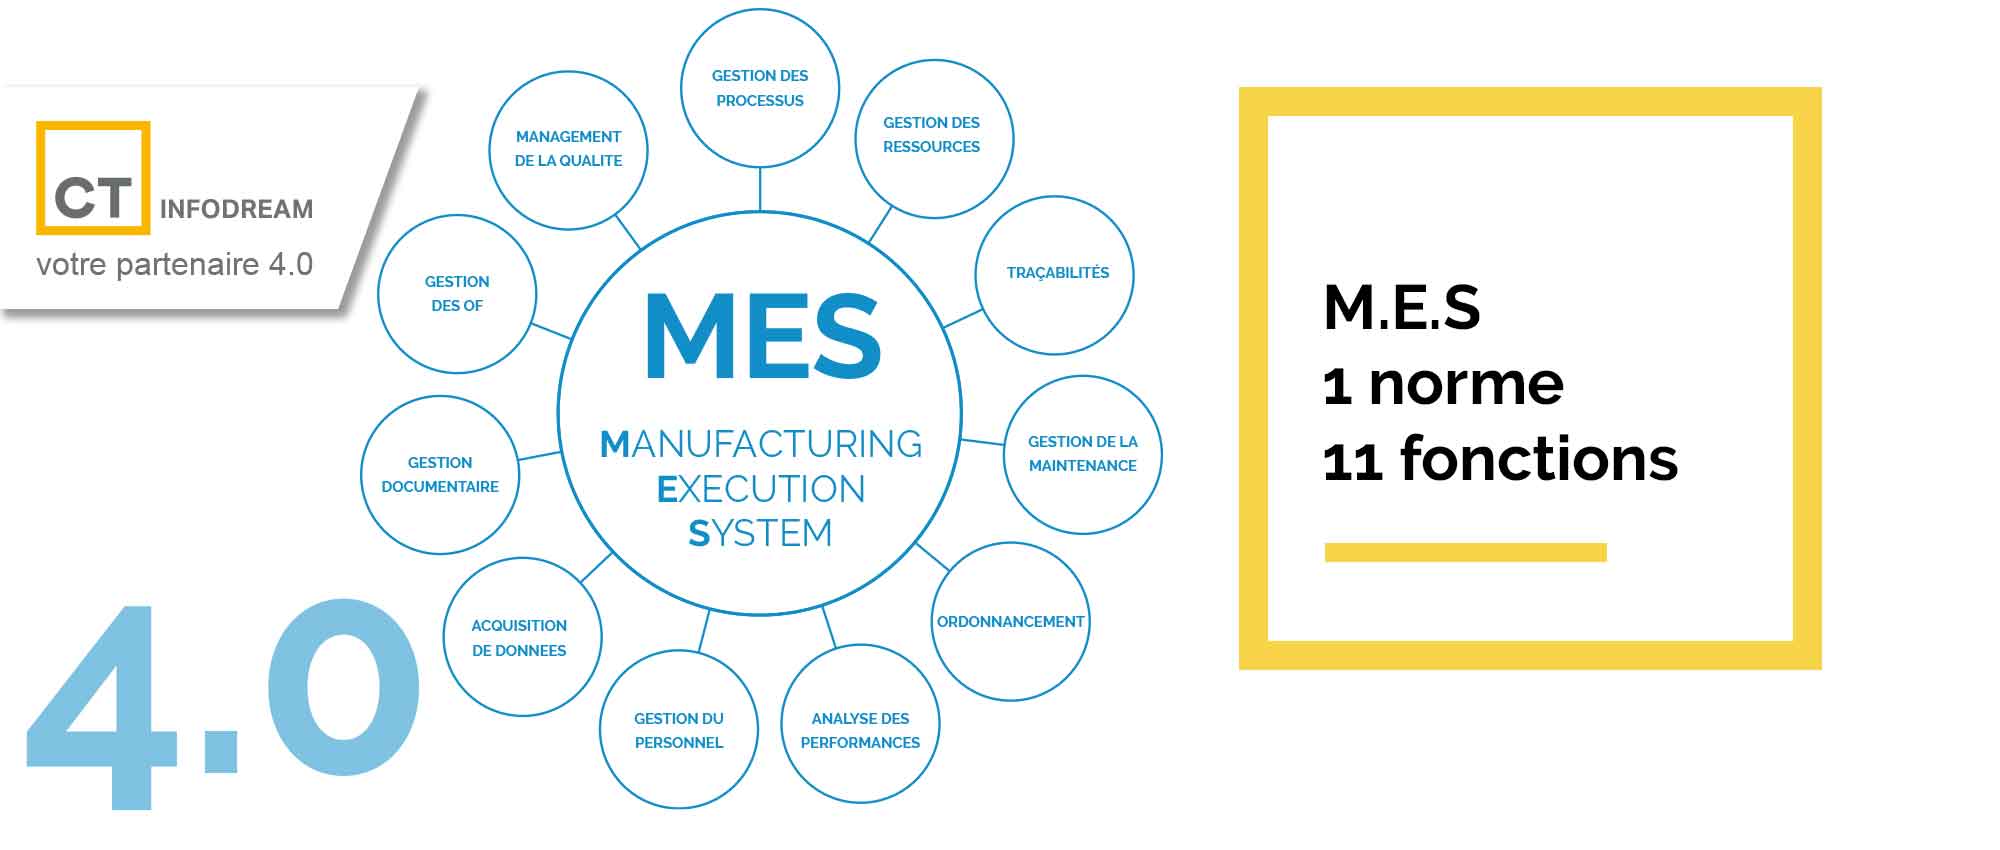 Les fonctions du logiciel MES selon la norme ISA95